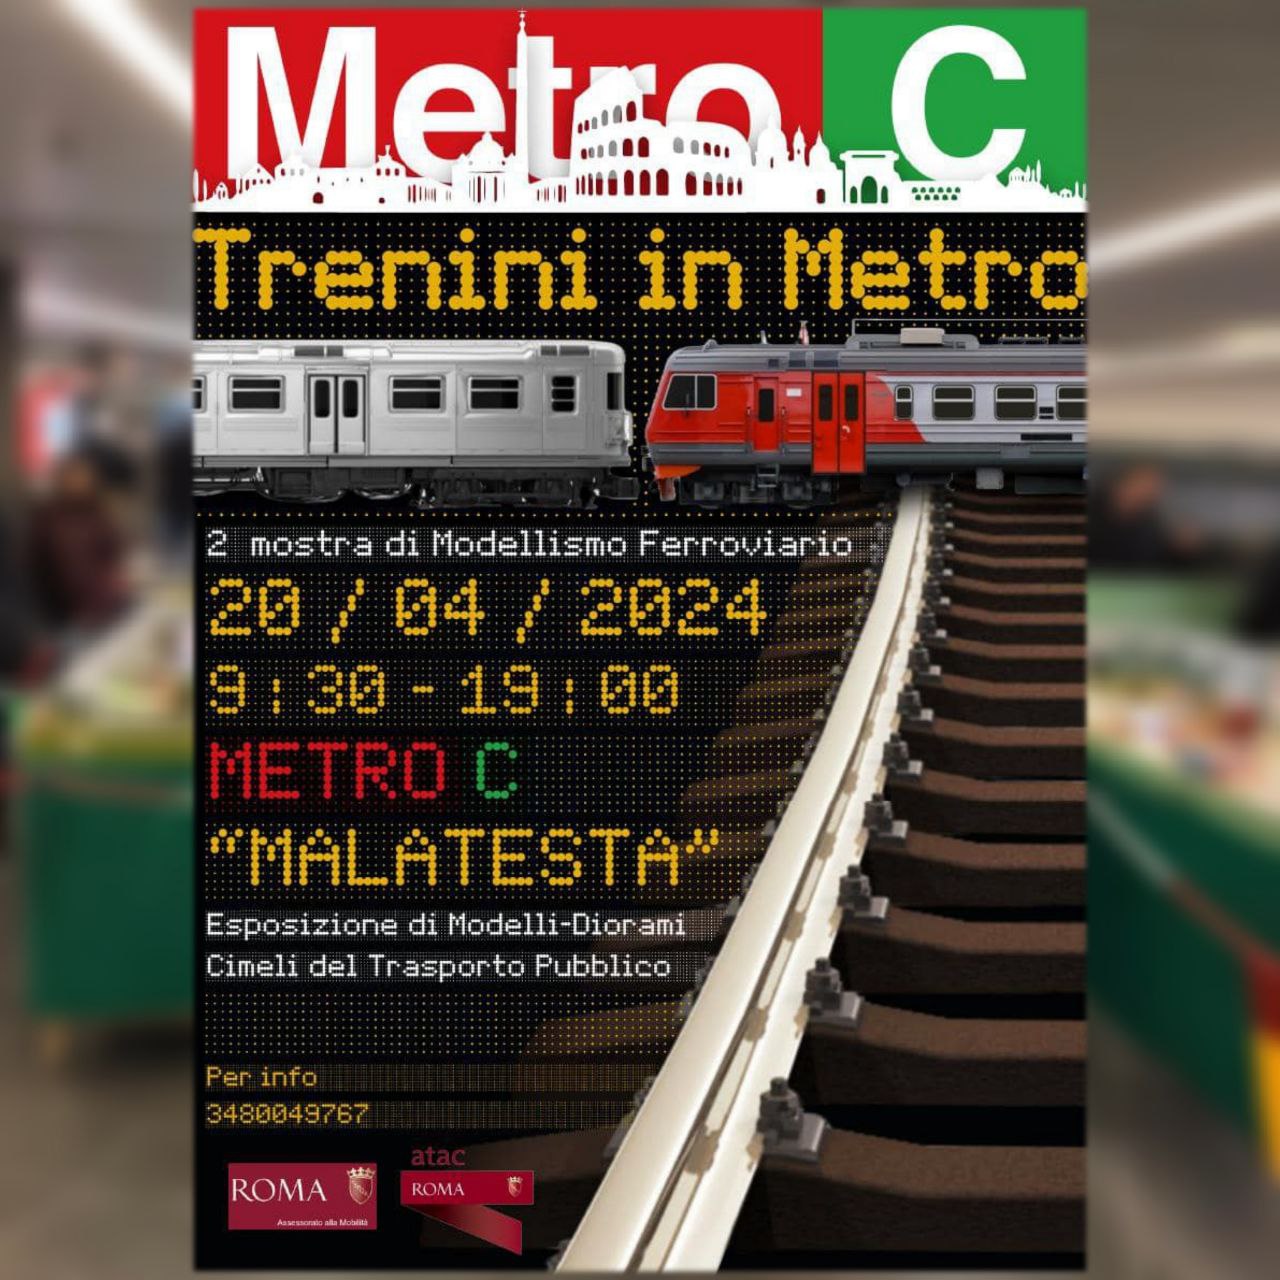 Metro C: sabato 20 aprile a Malatesta c'è la mostra